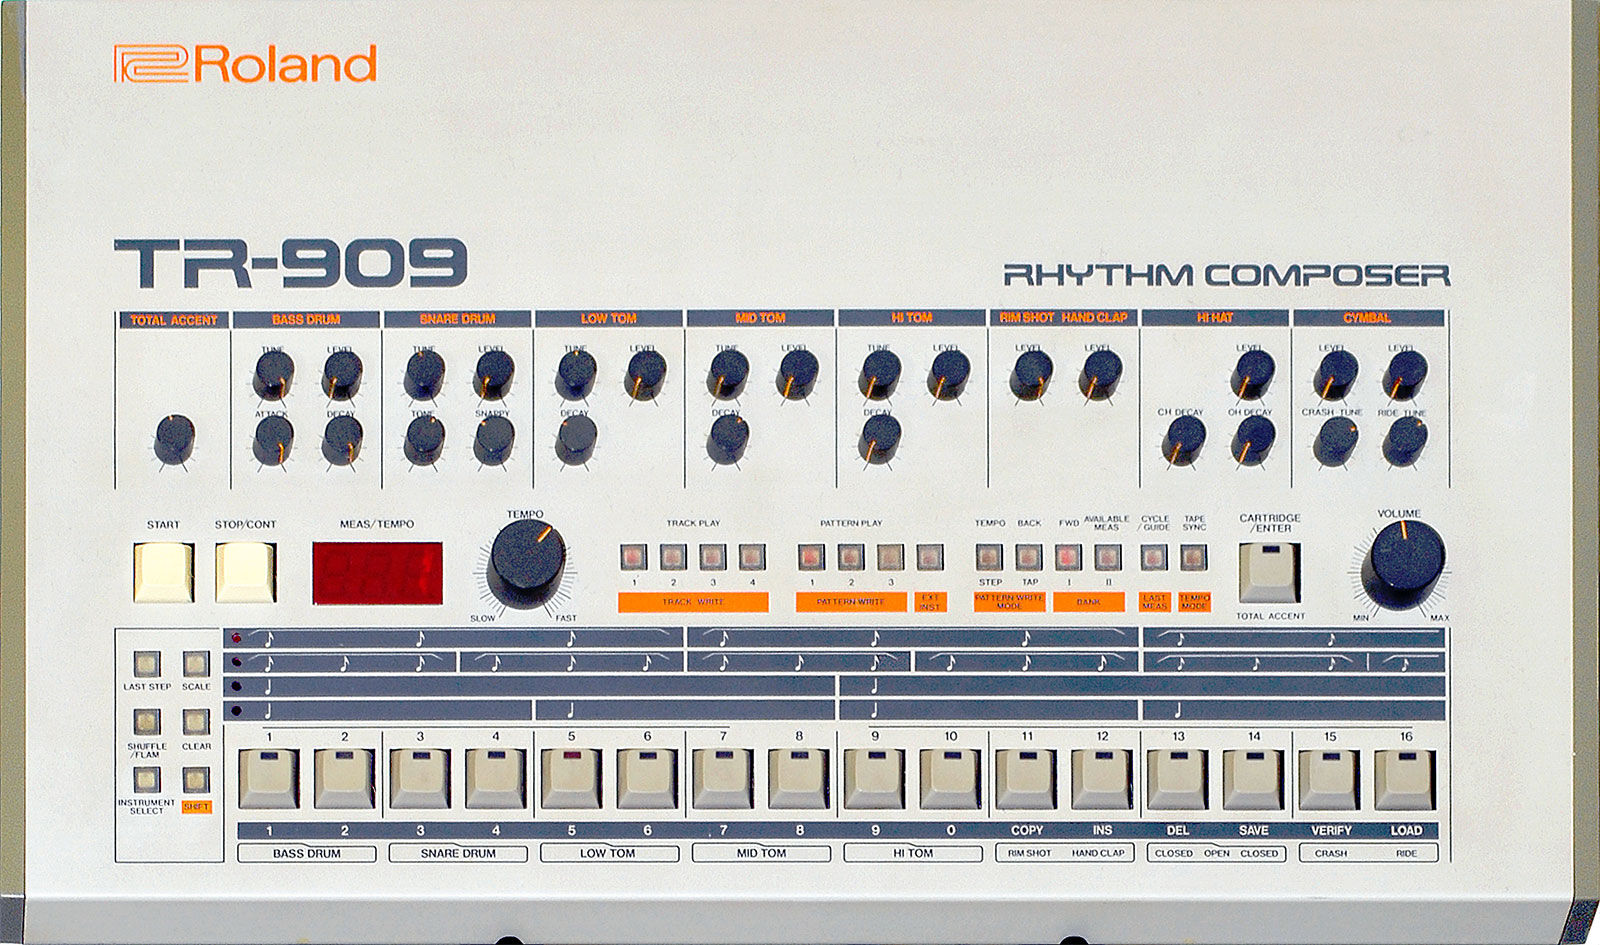 Chiffres en image Roland-tr-909